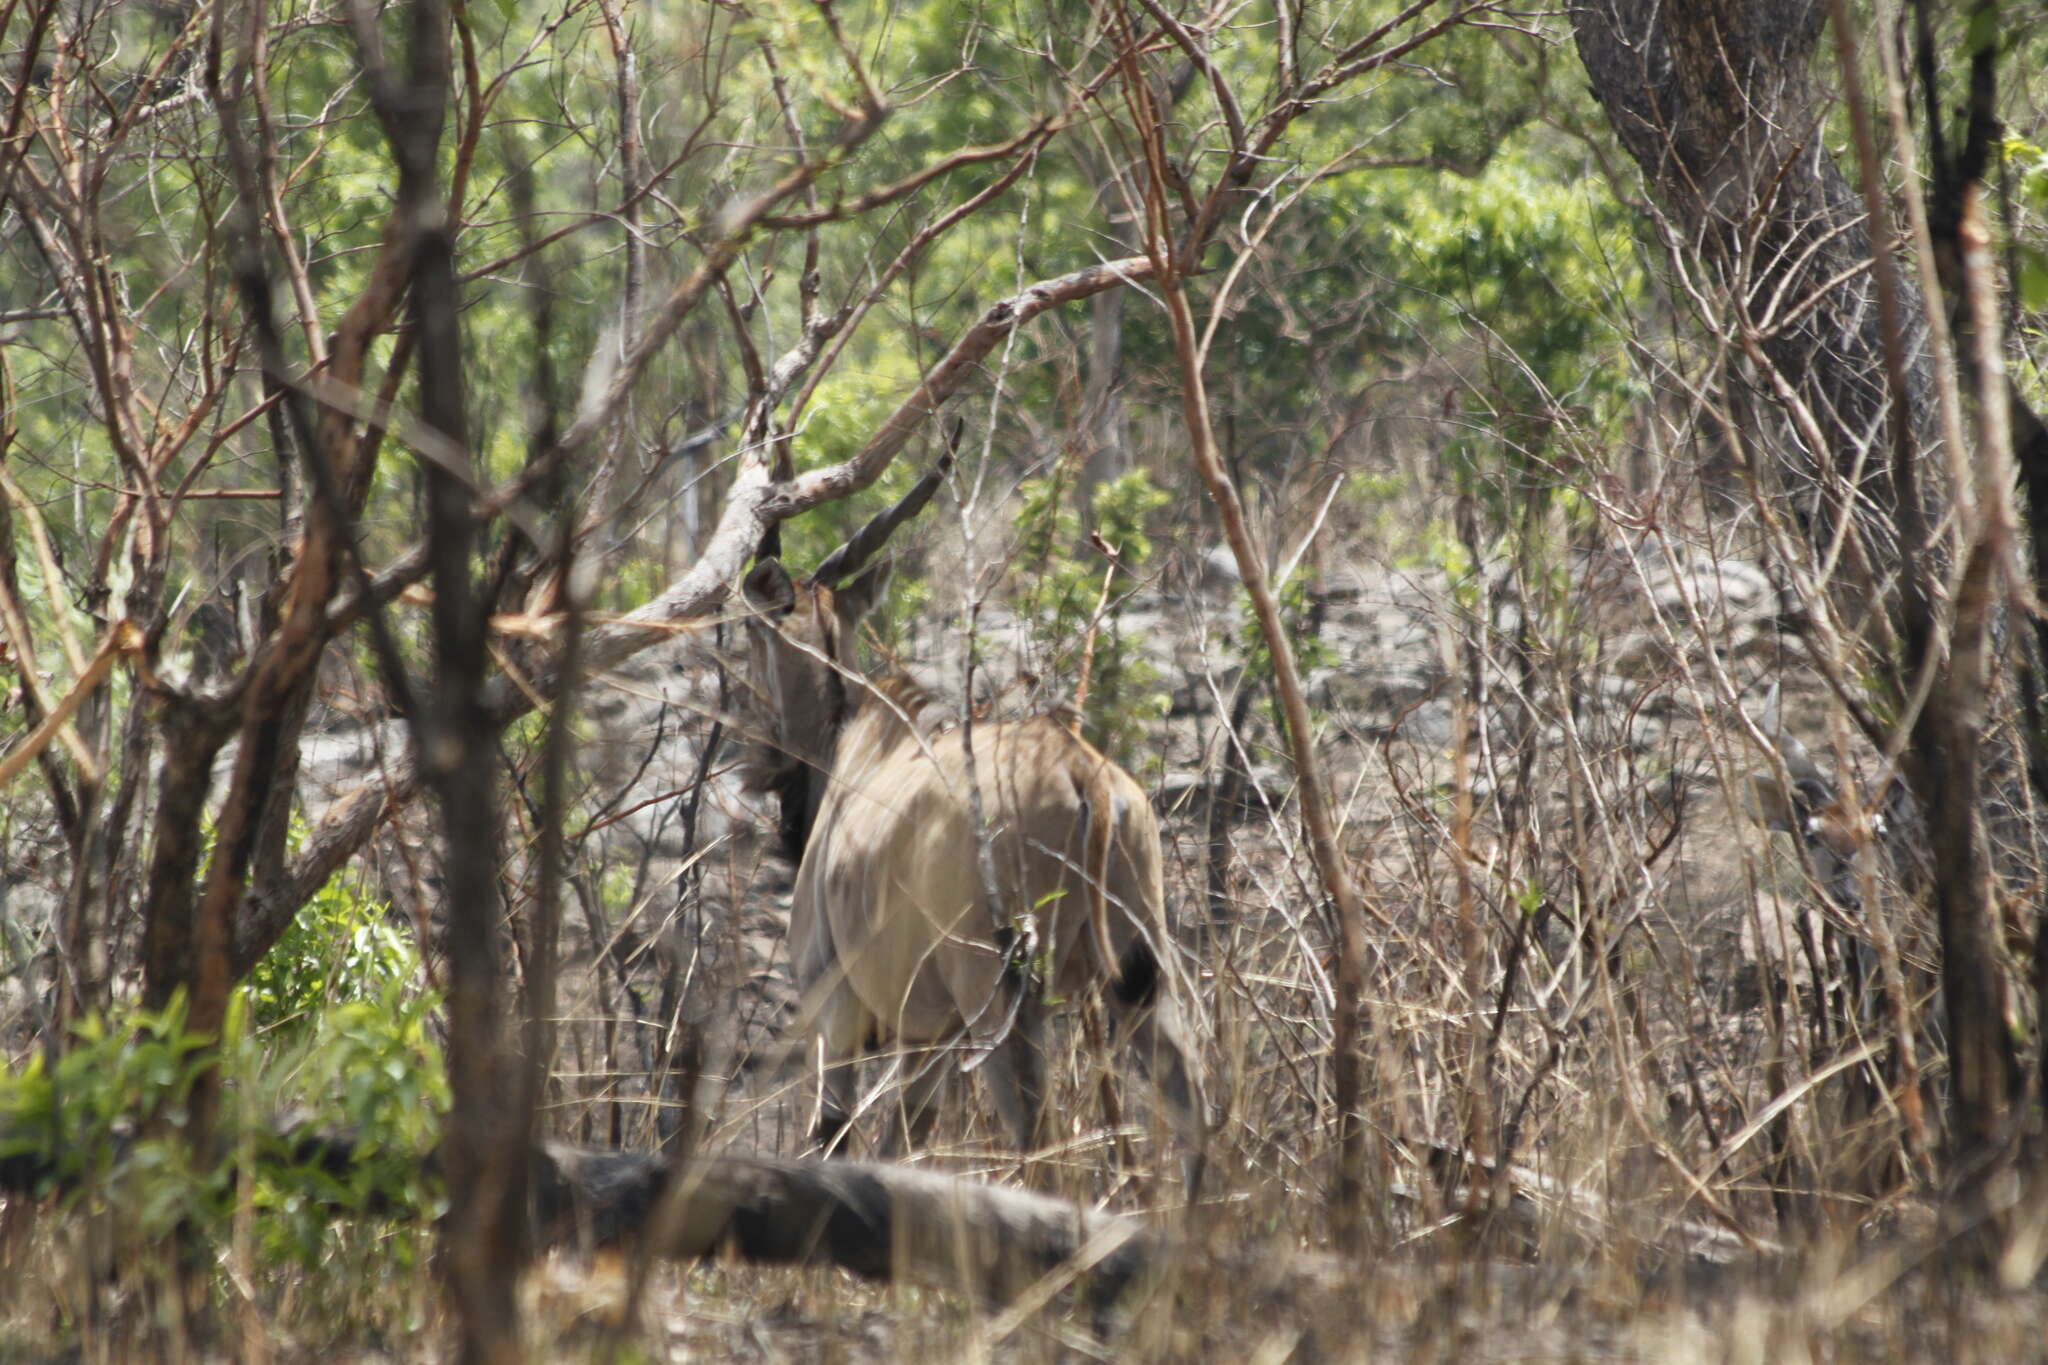 Image of giant eland